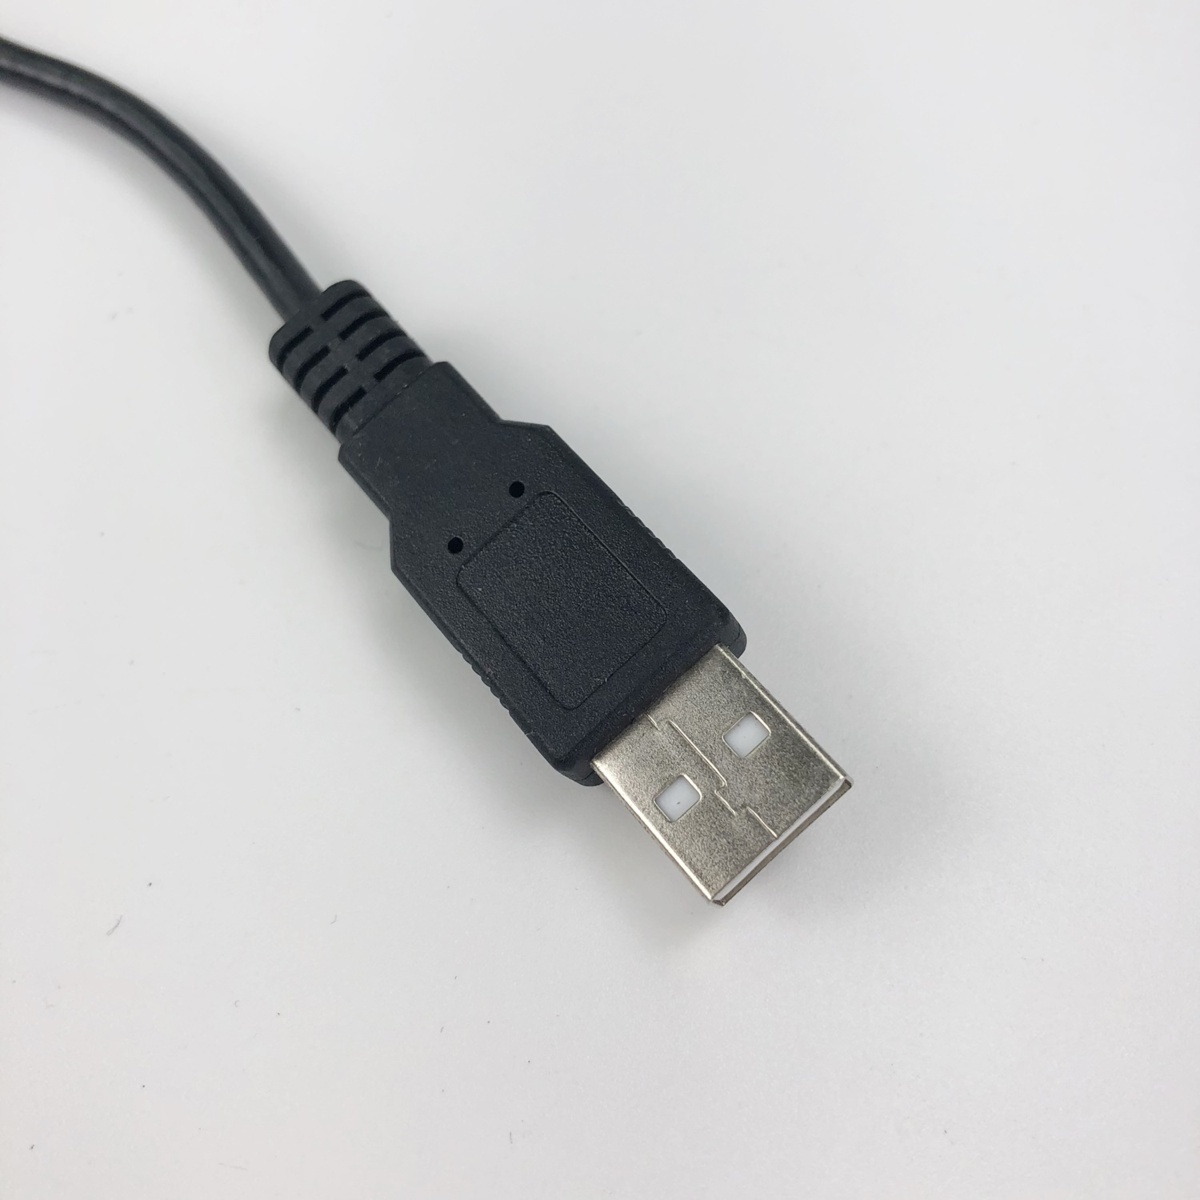 【ネコポス送料無料】USBポート 埋め込み スイッチホール オーディオ USB電源 接続通信 埋込_画像4